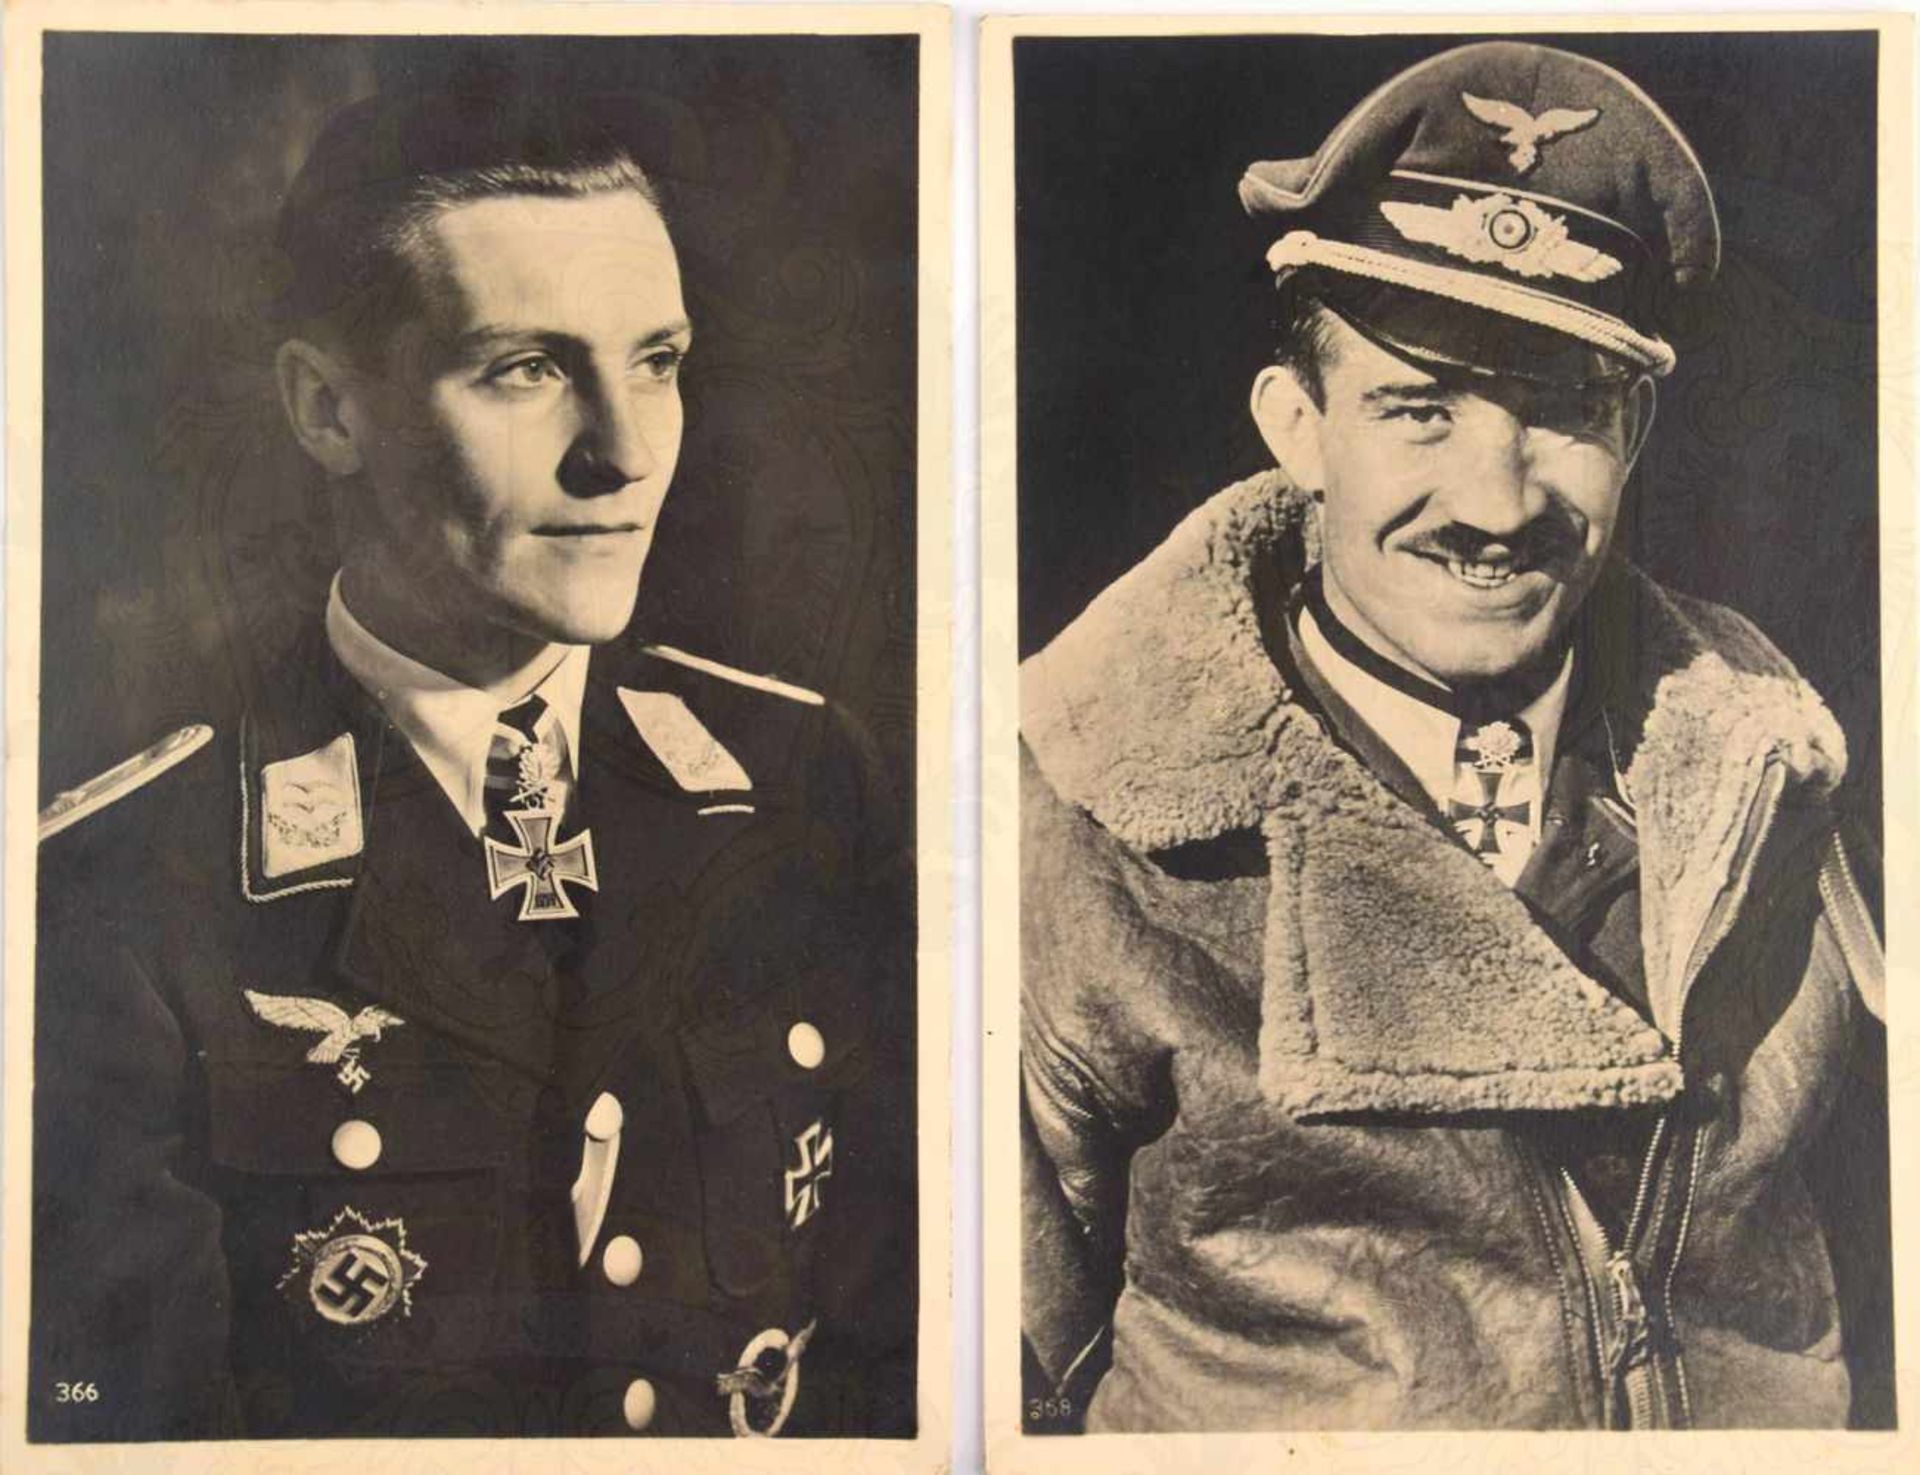 2 FOTO-AK HANS-JOACHIM MARSEILLE UND ADOLF GALLAND, beide m. RK, EL u. Schwertern, 1941/1942,